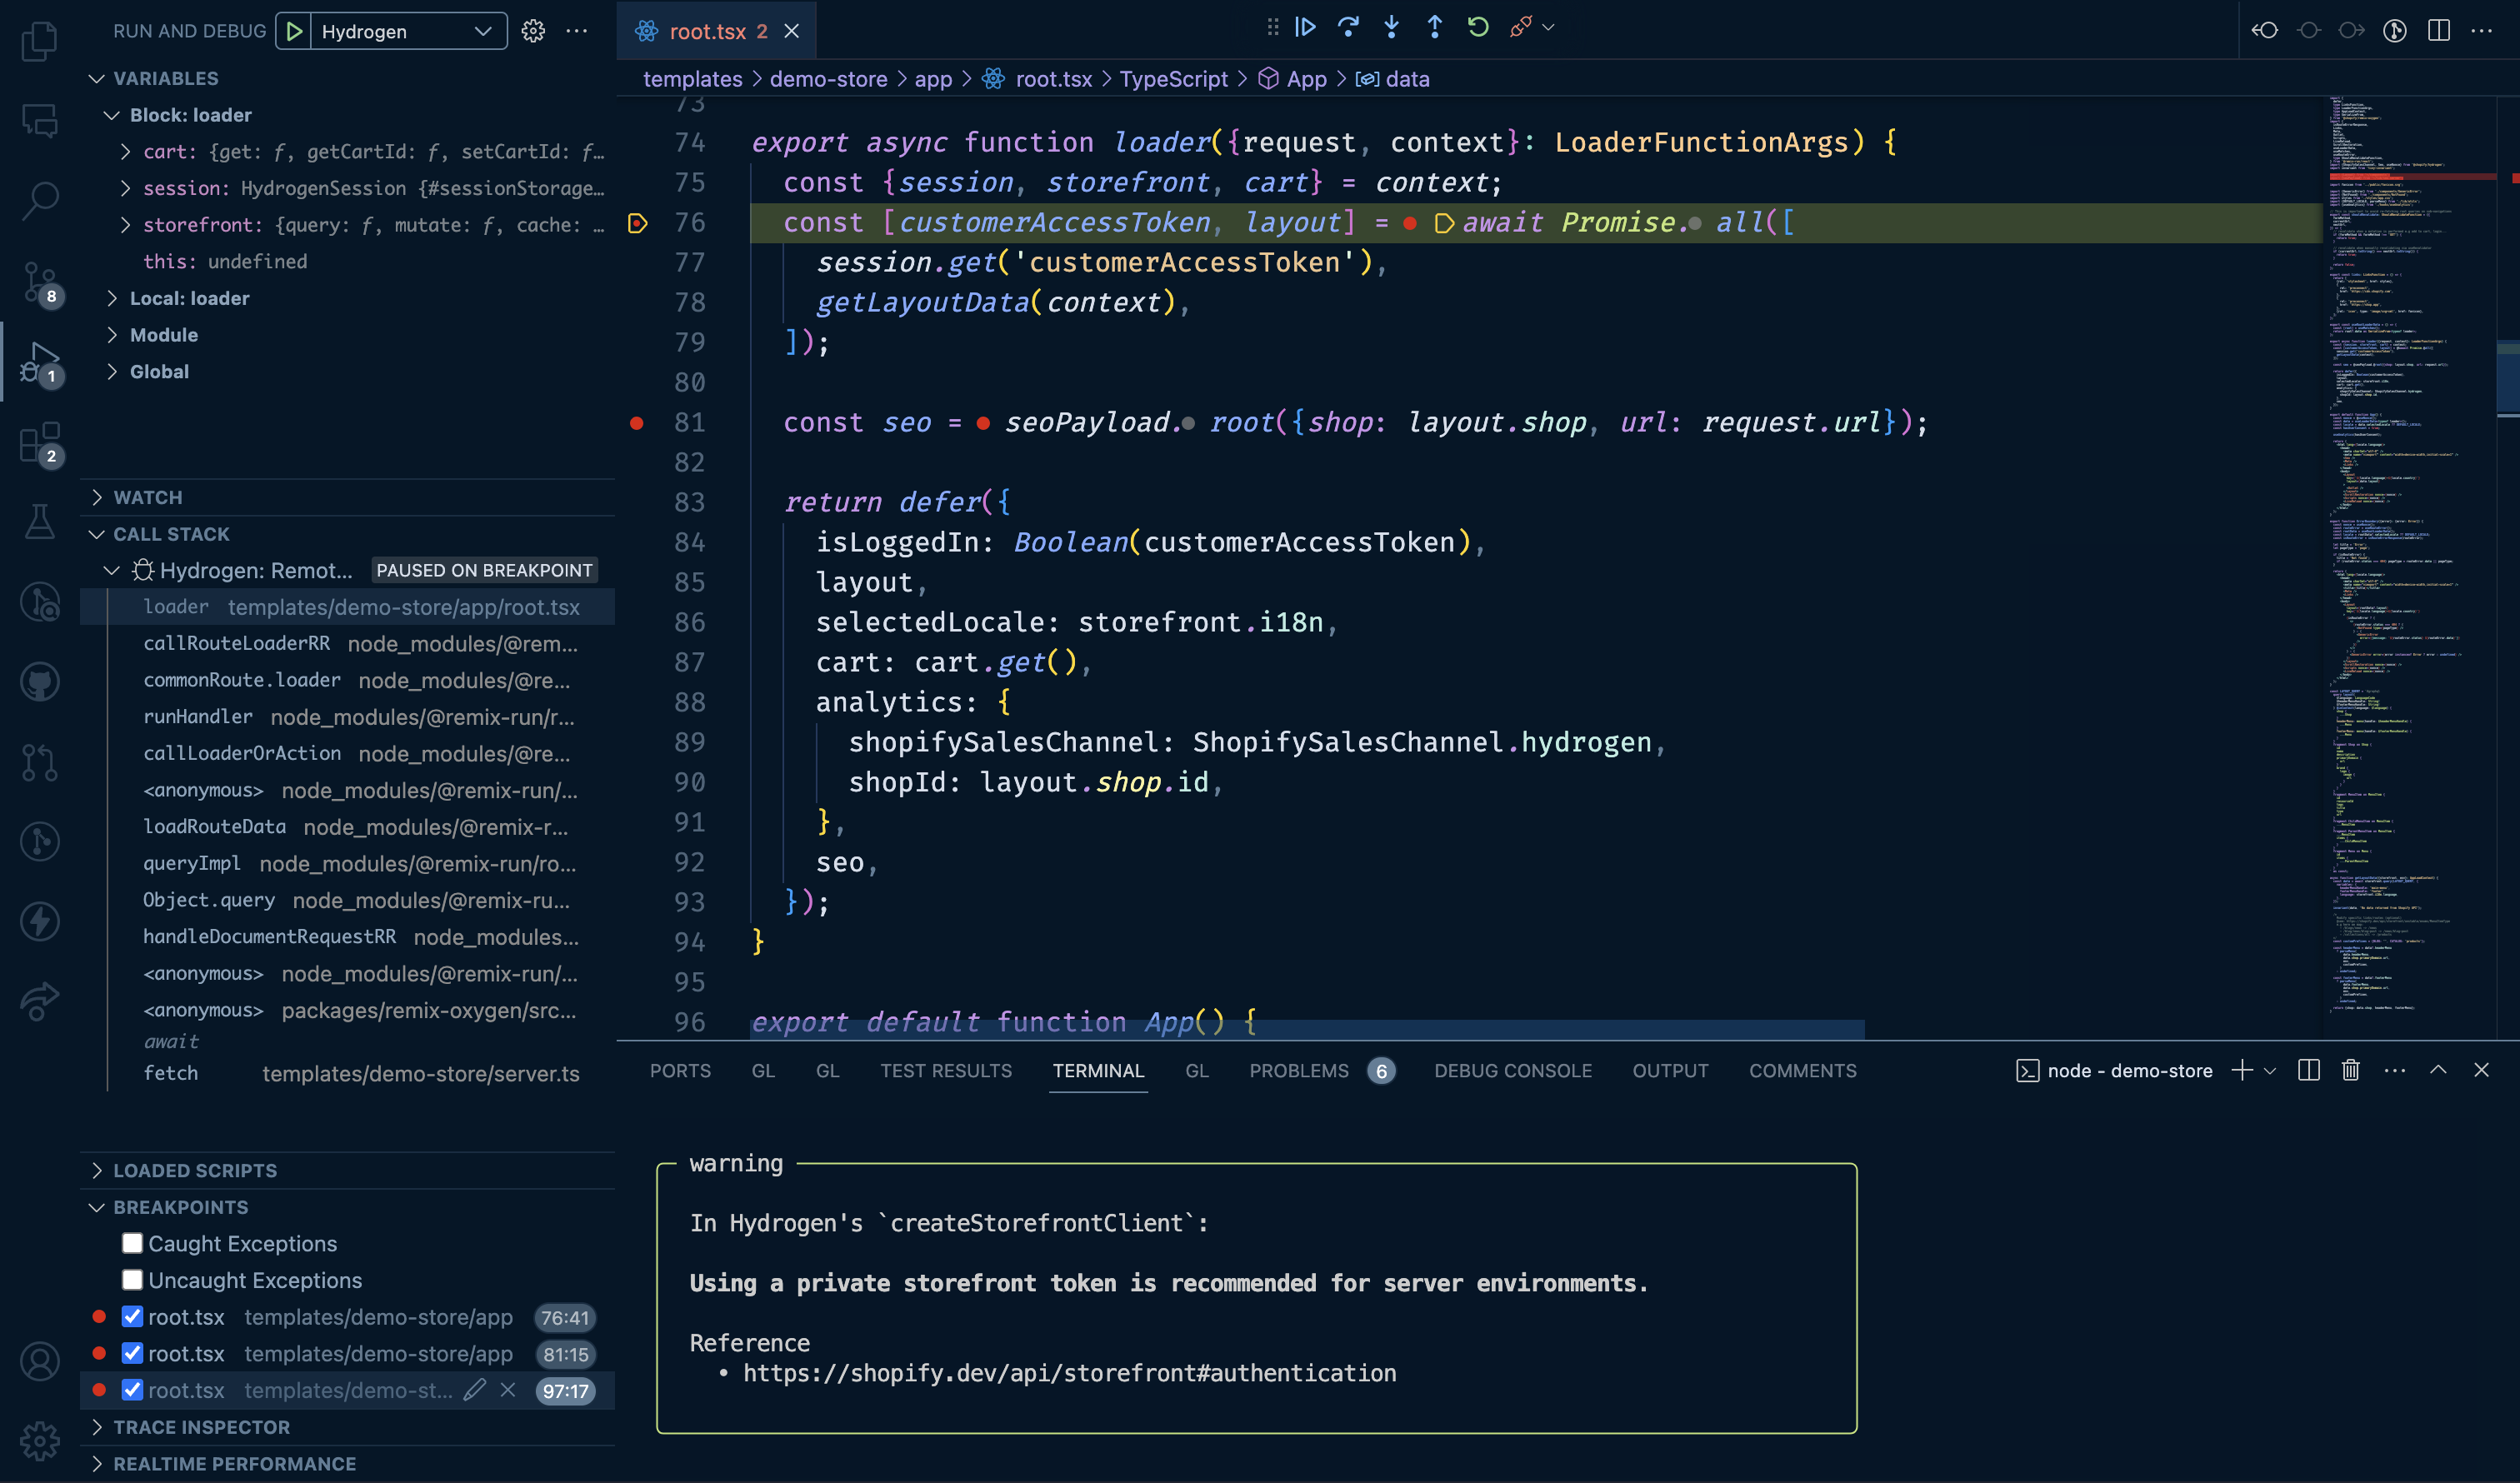 Visual Studio Code debugging